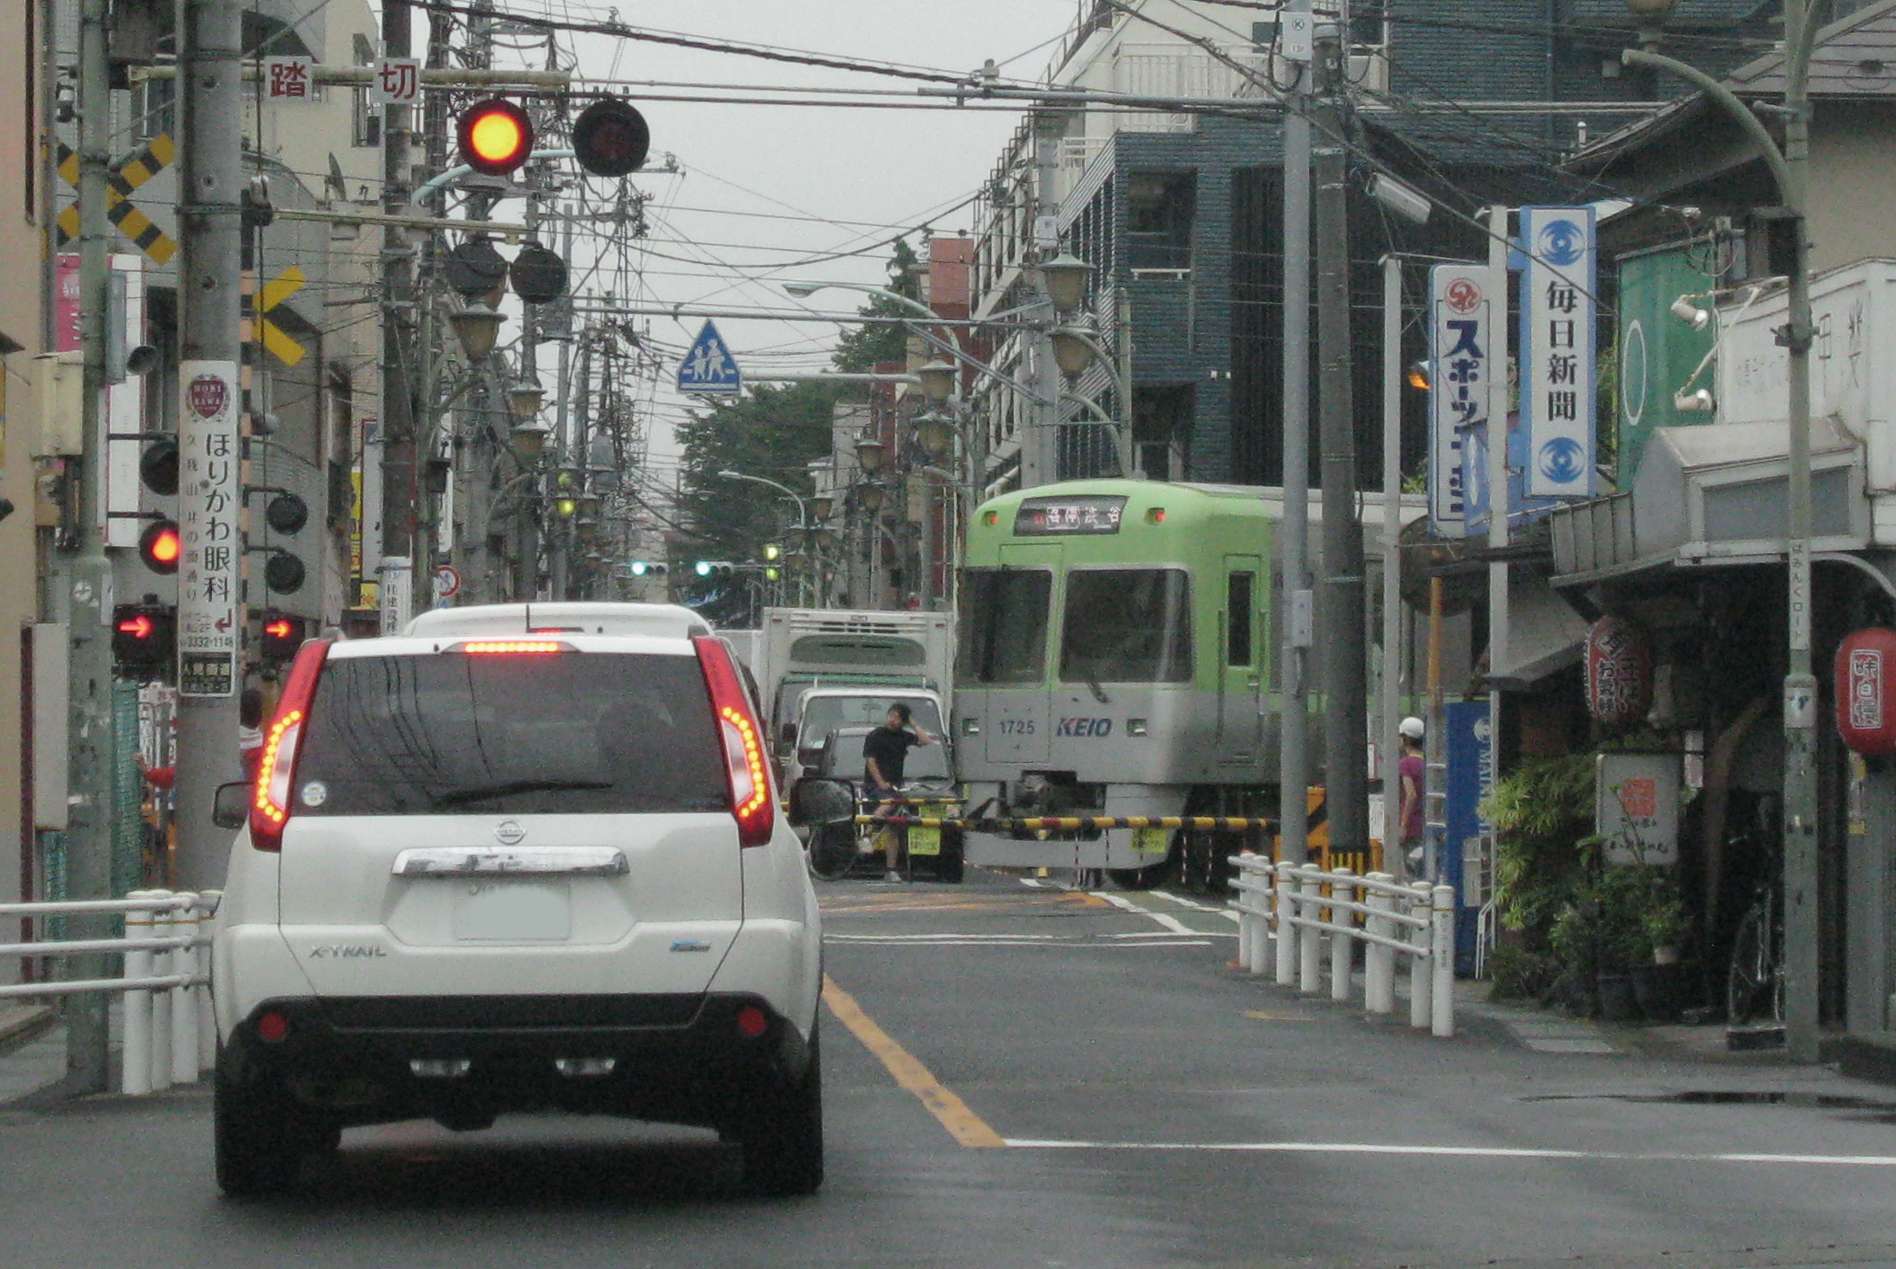 京王電鉄井の頭線久我山駅周辺の情景。2015年(平成27年)7月撮影。